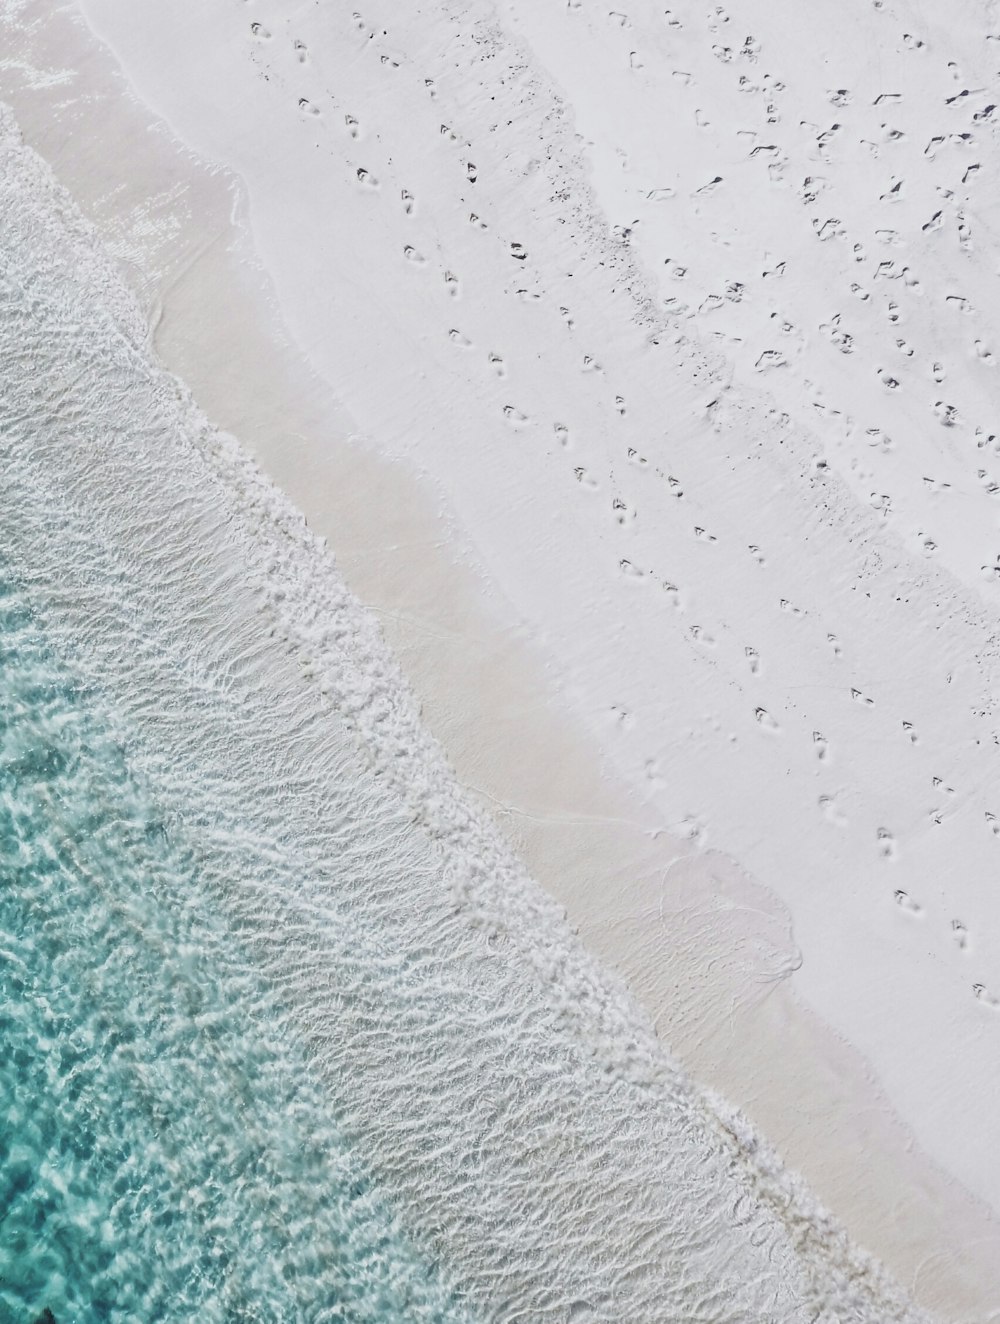 Photographie aérienne du bord de mer de sable blanc et de la plage d’eau verte